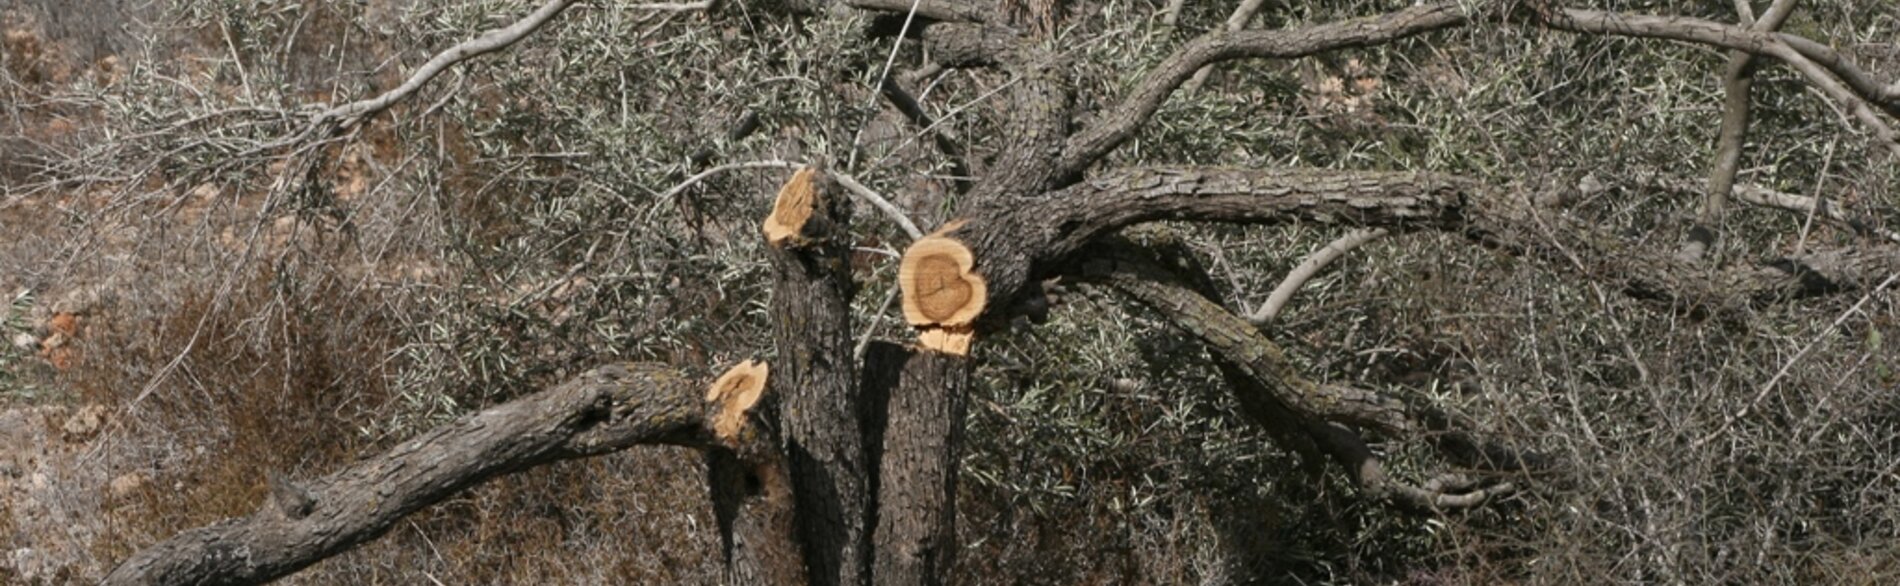 עצים שנעקרו בהקשר של בניית גדר ההפרדה באזור בית לחם. צילום: משרד האו״ם לתיאום עניינים הומניטריים